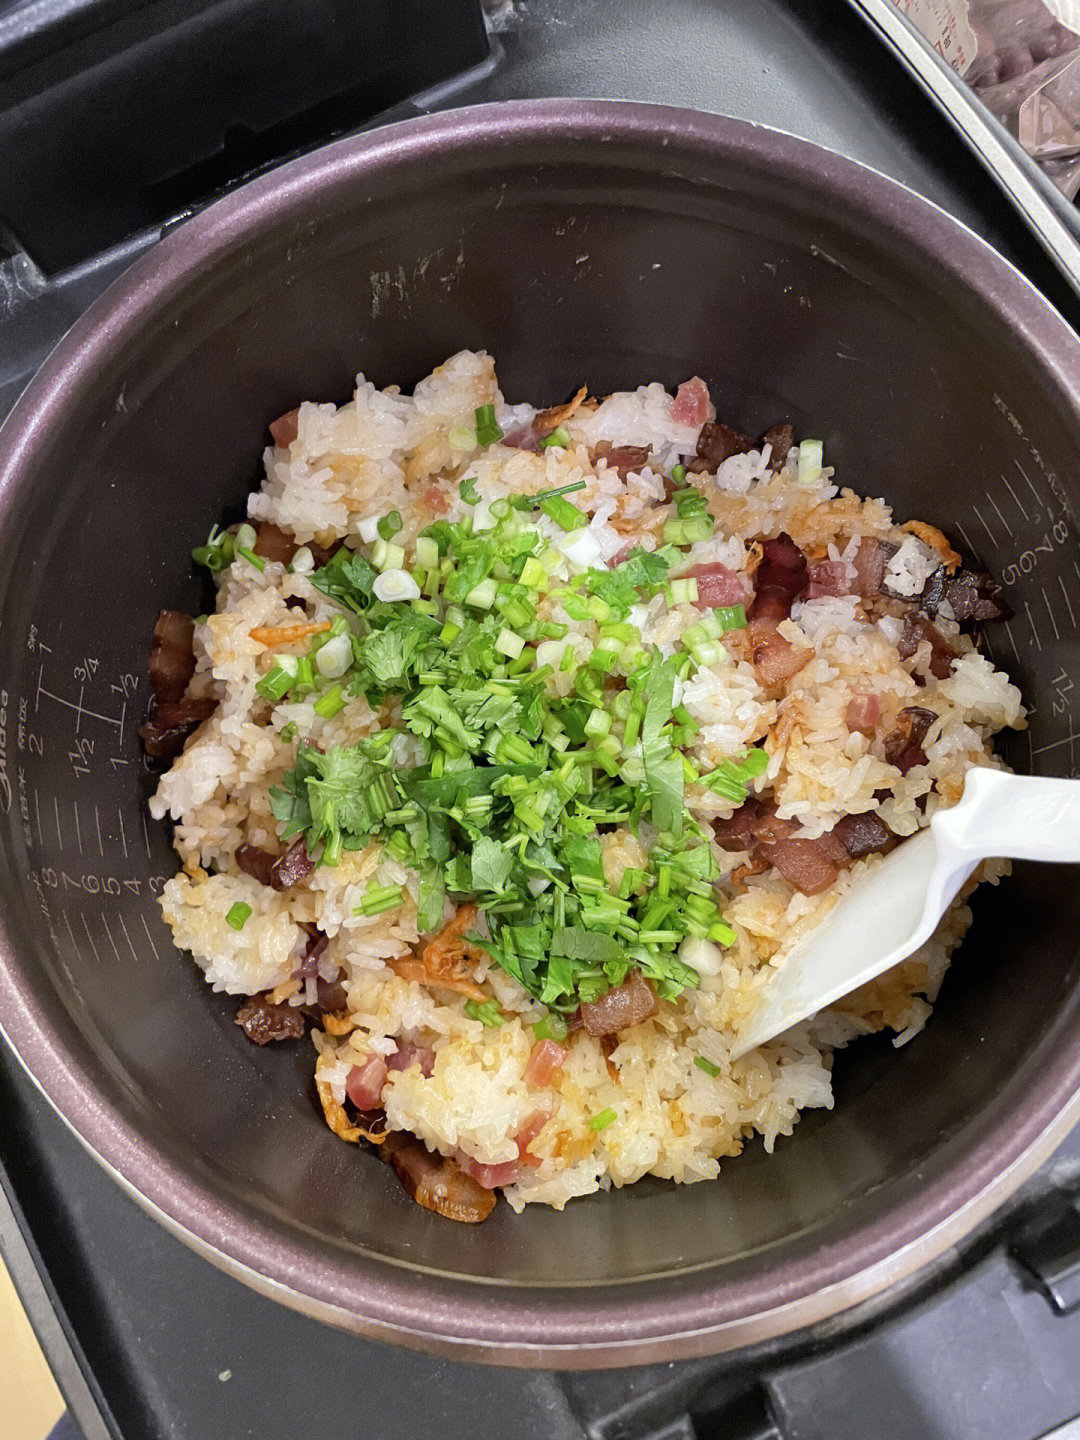 今晚吃腊味糯米饭和西洋菜陈肾汤,算是广东地区秋冬的热门菜吧,降温了